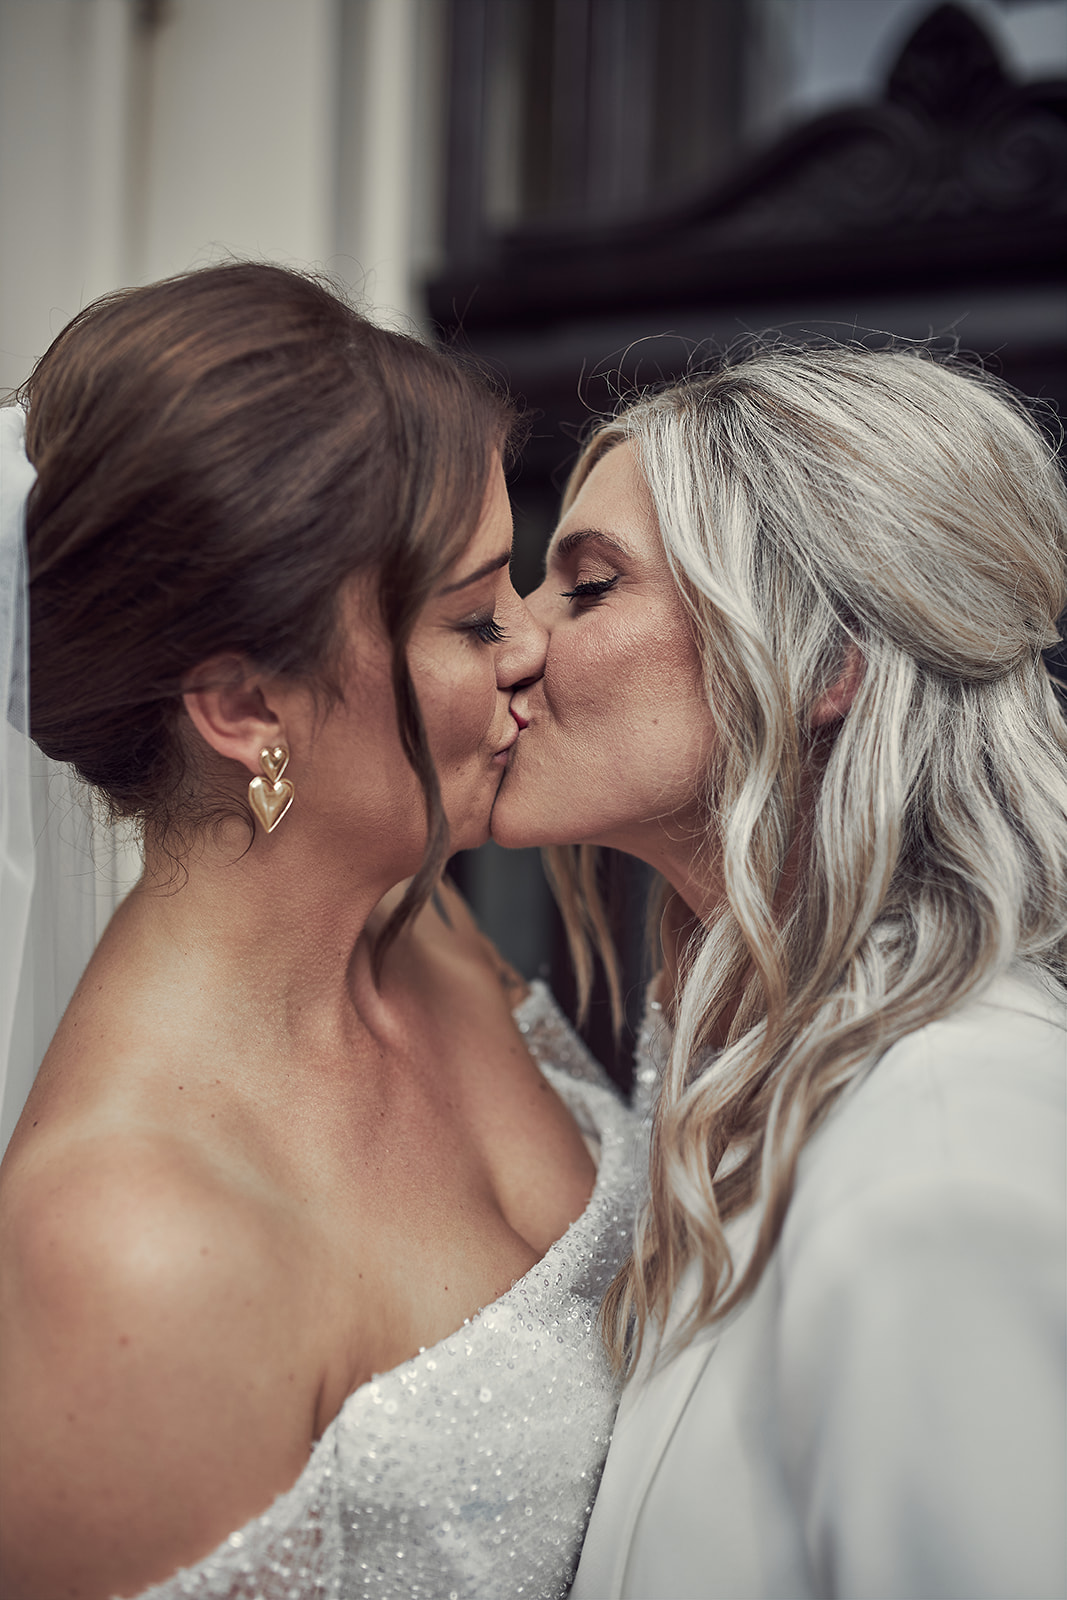 brides sharing a passionate kiss